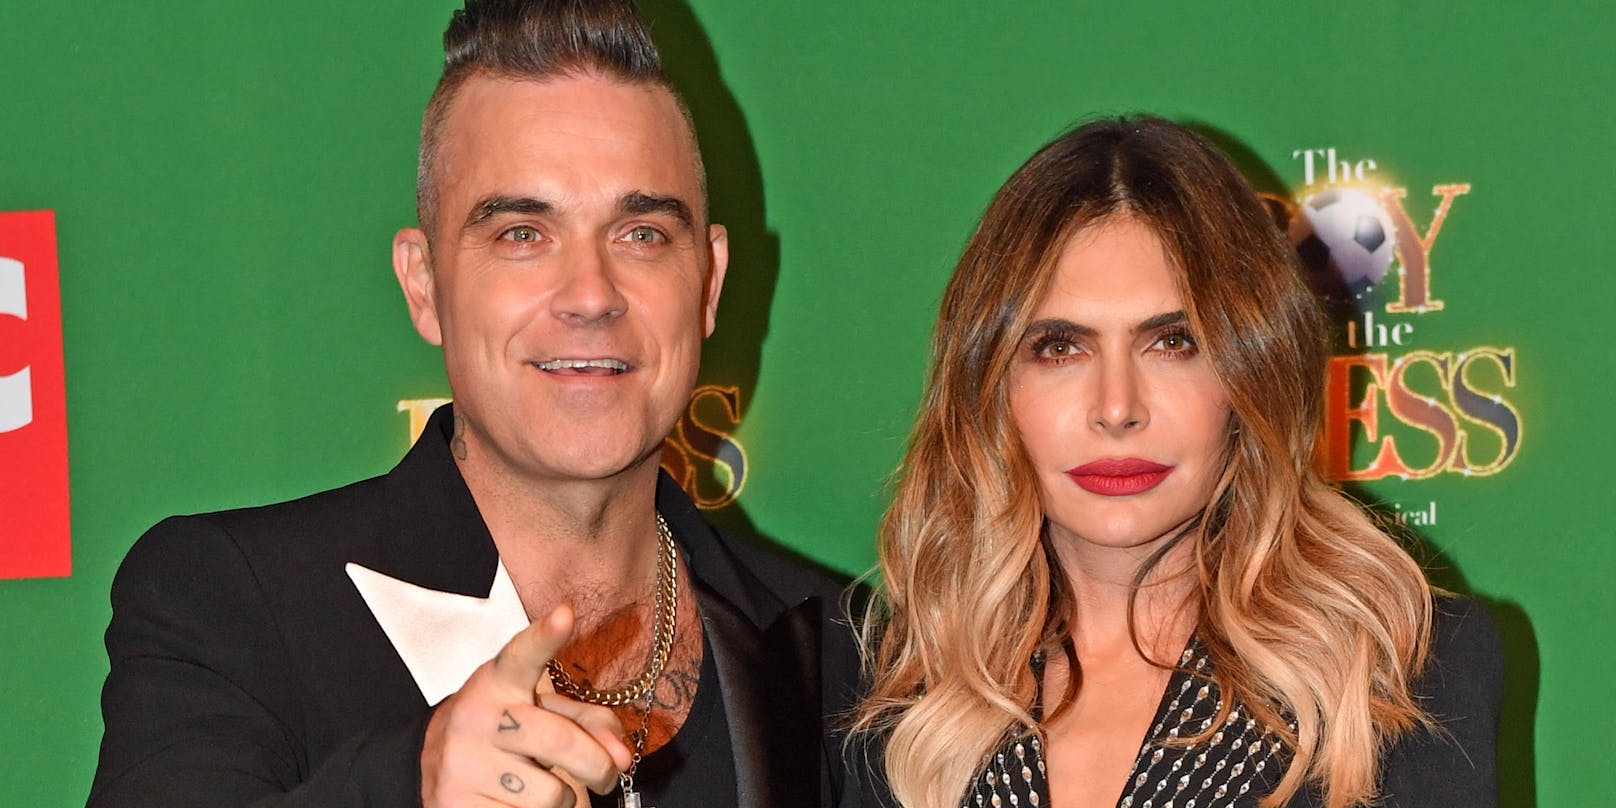 Robbie Williams und Ayda Field teilen eine recht eklige Angewohnheit: Sie pinkeln gerne in fremde Pools